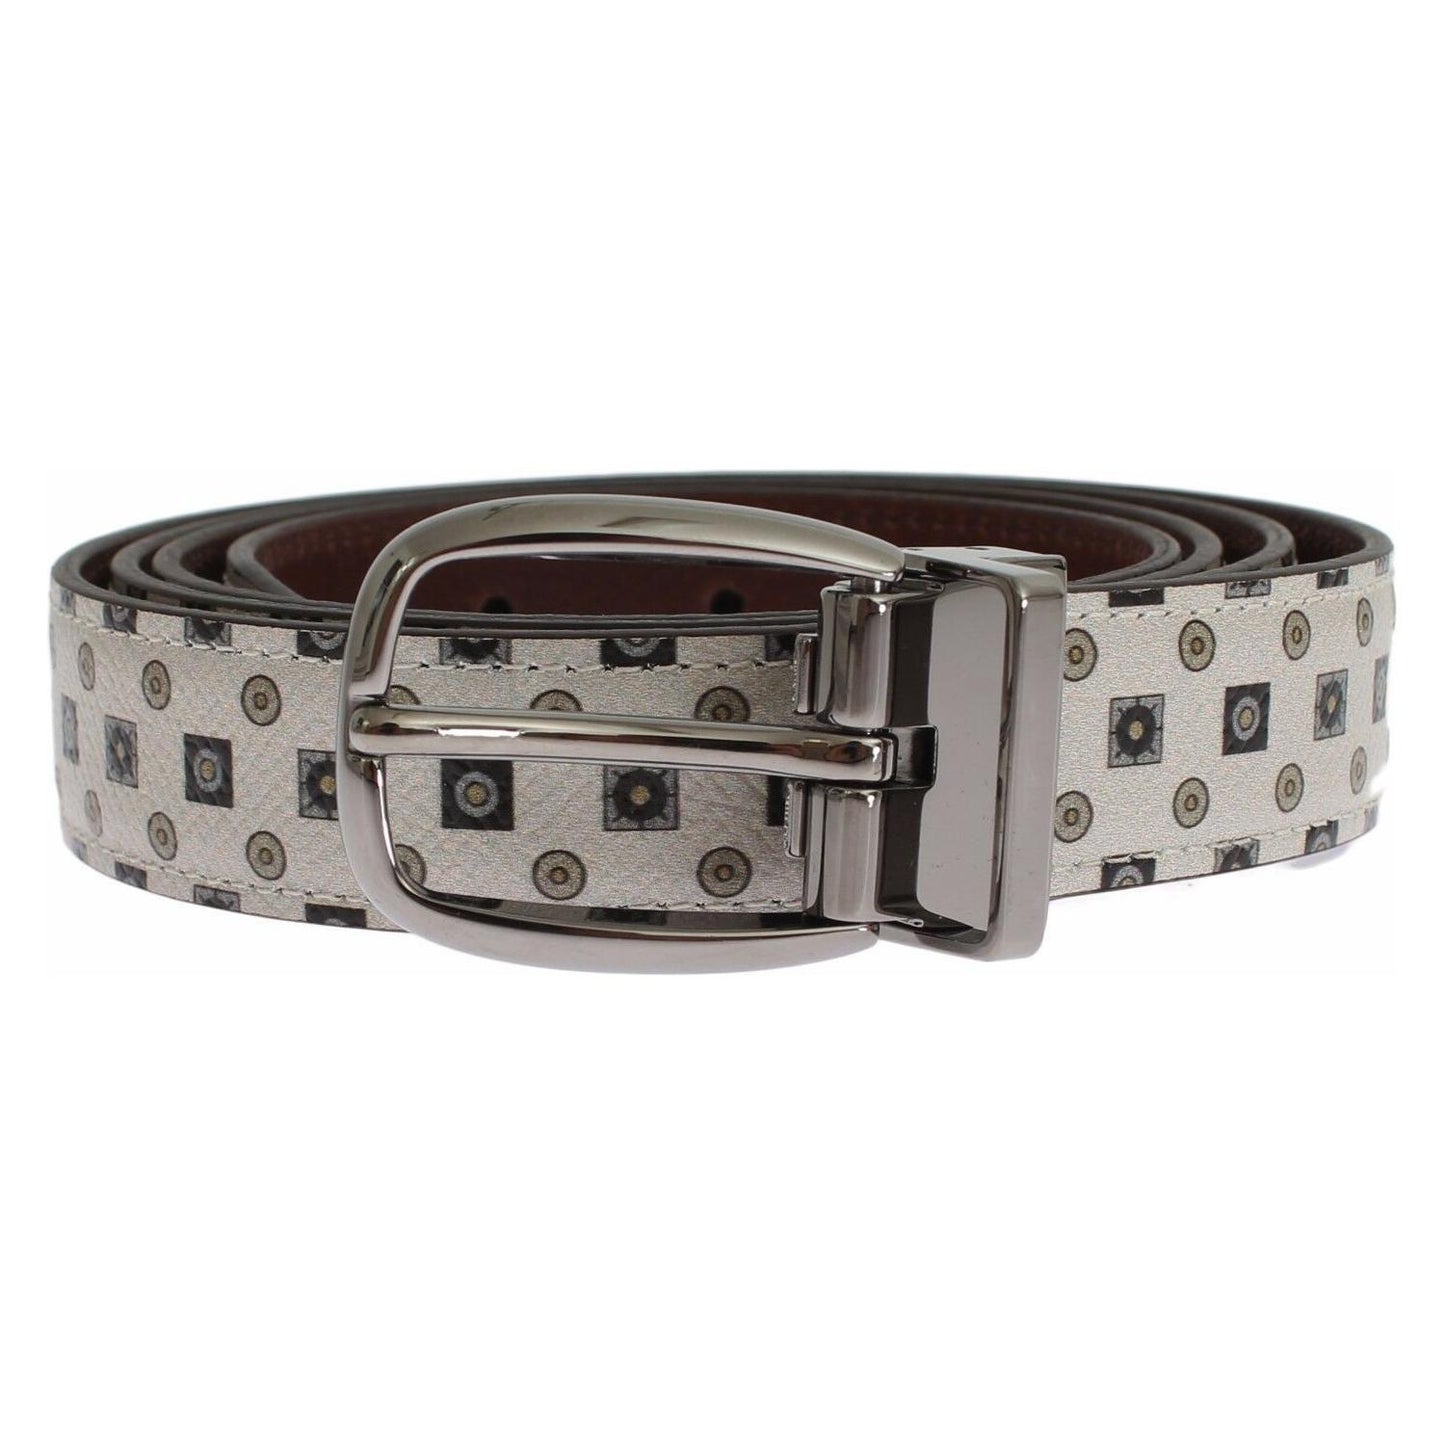 Dolce & Gabbana Elegant Baroque Silk Tie & Leather Belt Set Belt white-silk-bowtie-leather-men-belt-gift-box